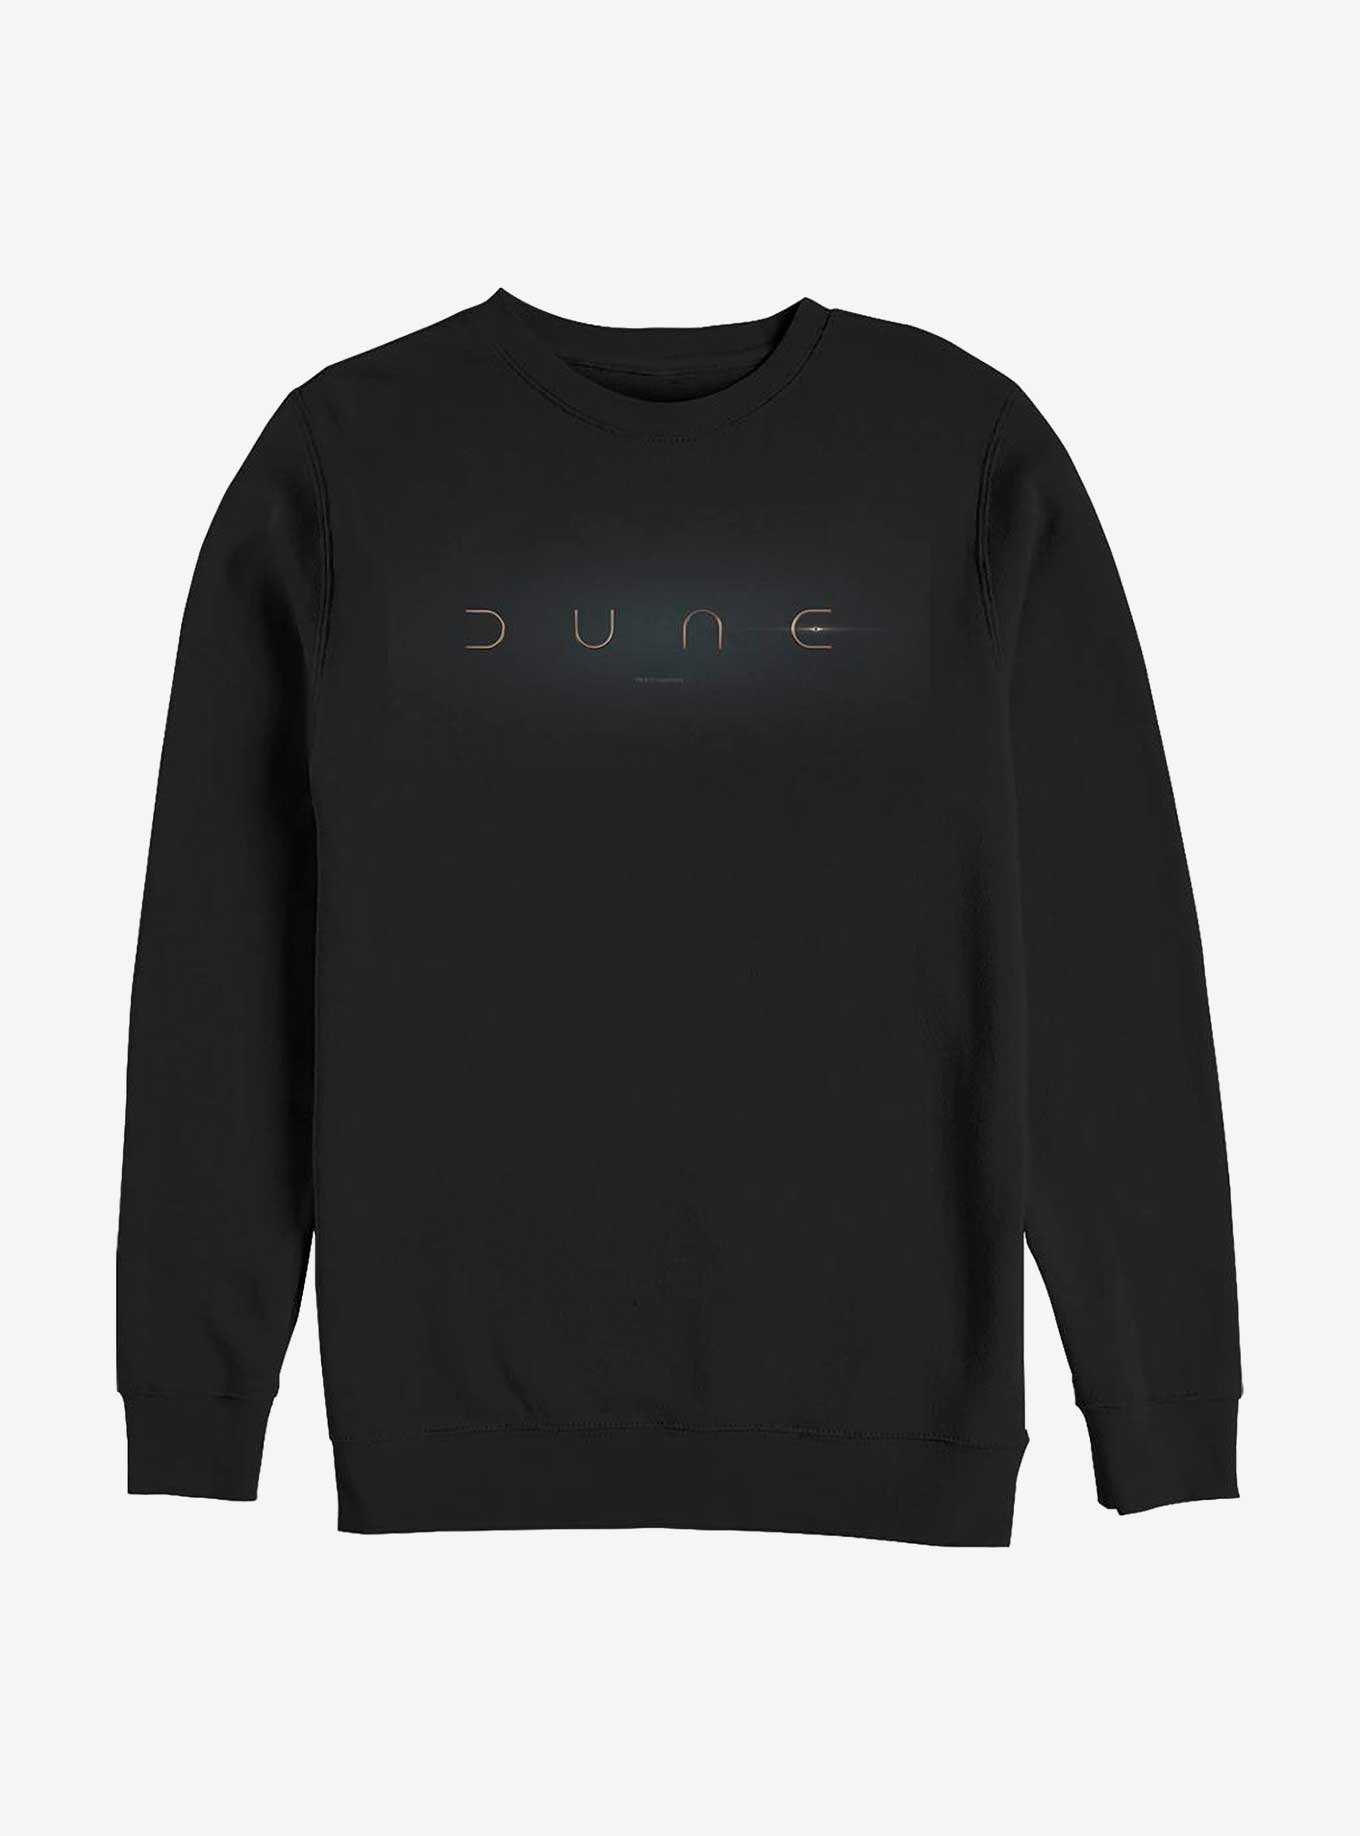 Dune Dune Logo Crew Sweatshirt, , hi-res